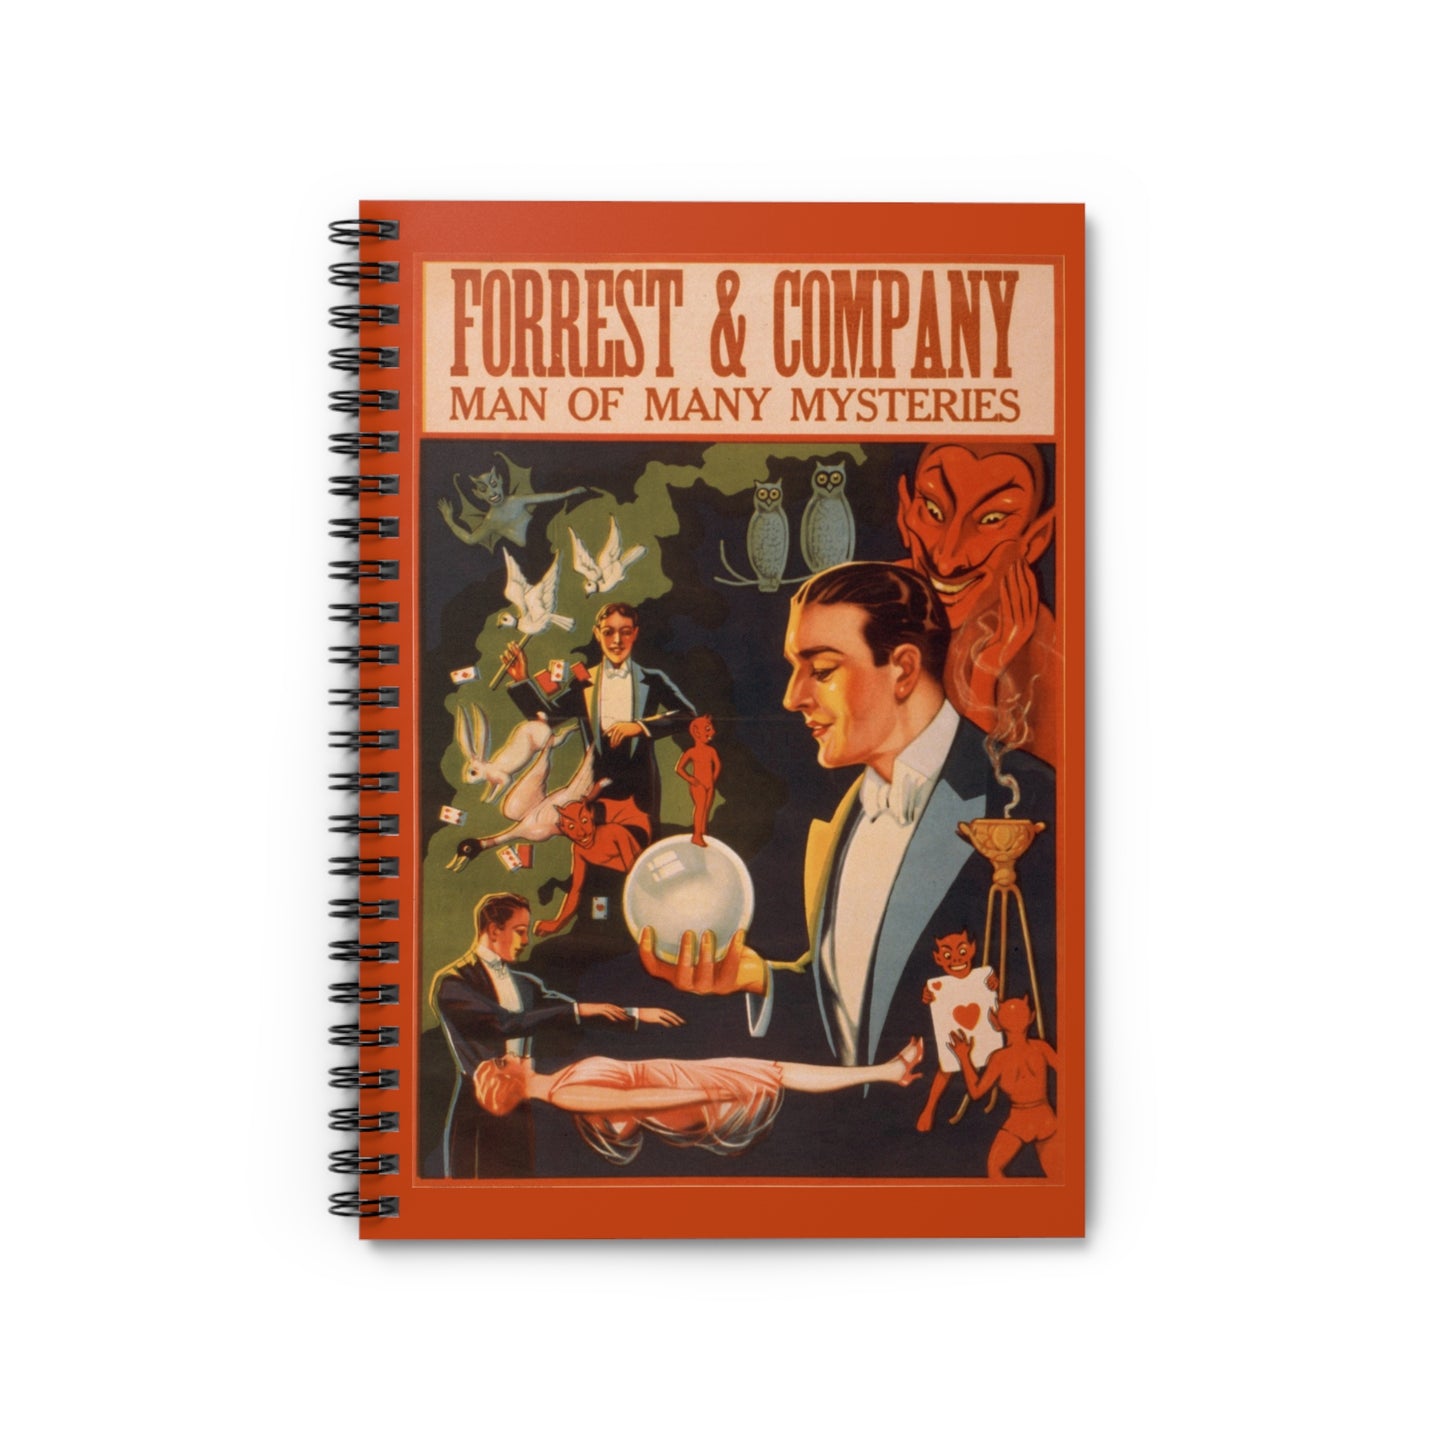 Vaudeville Forrest & Company Vintage Spiral Notebook - Ruled Line